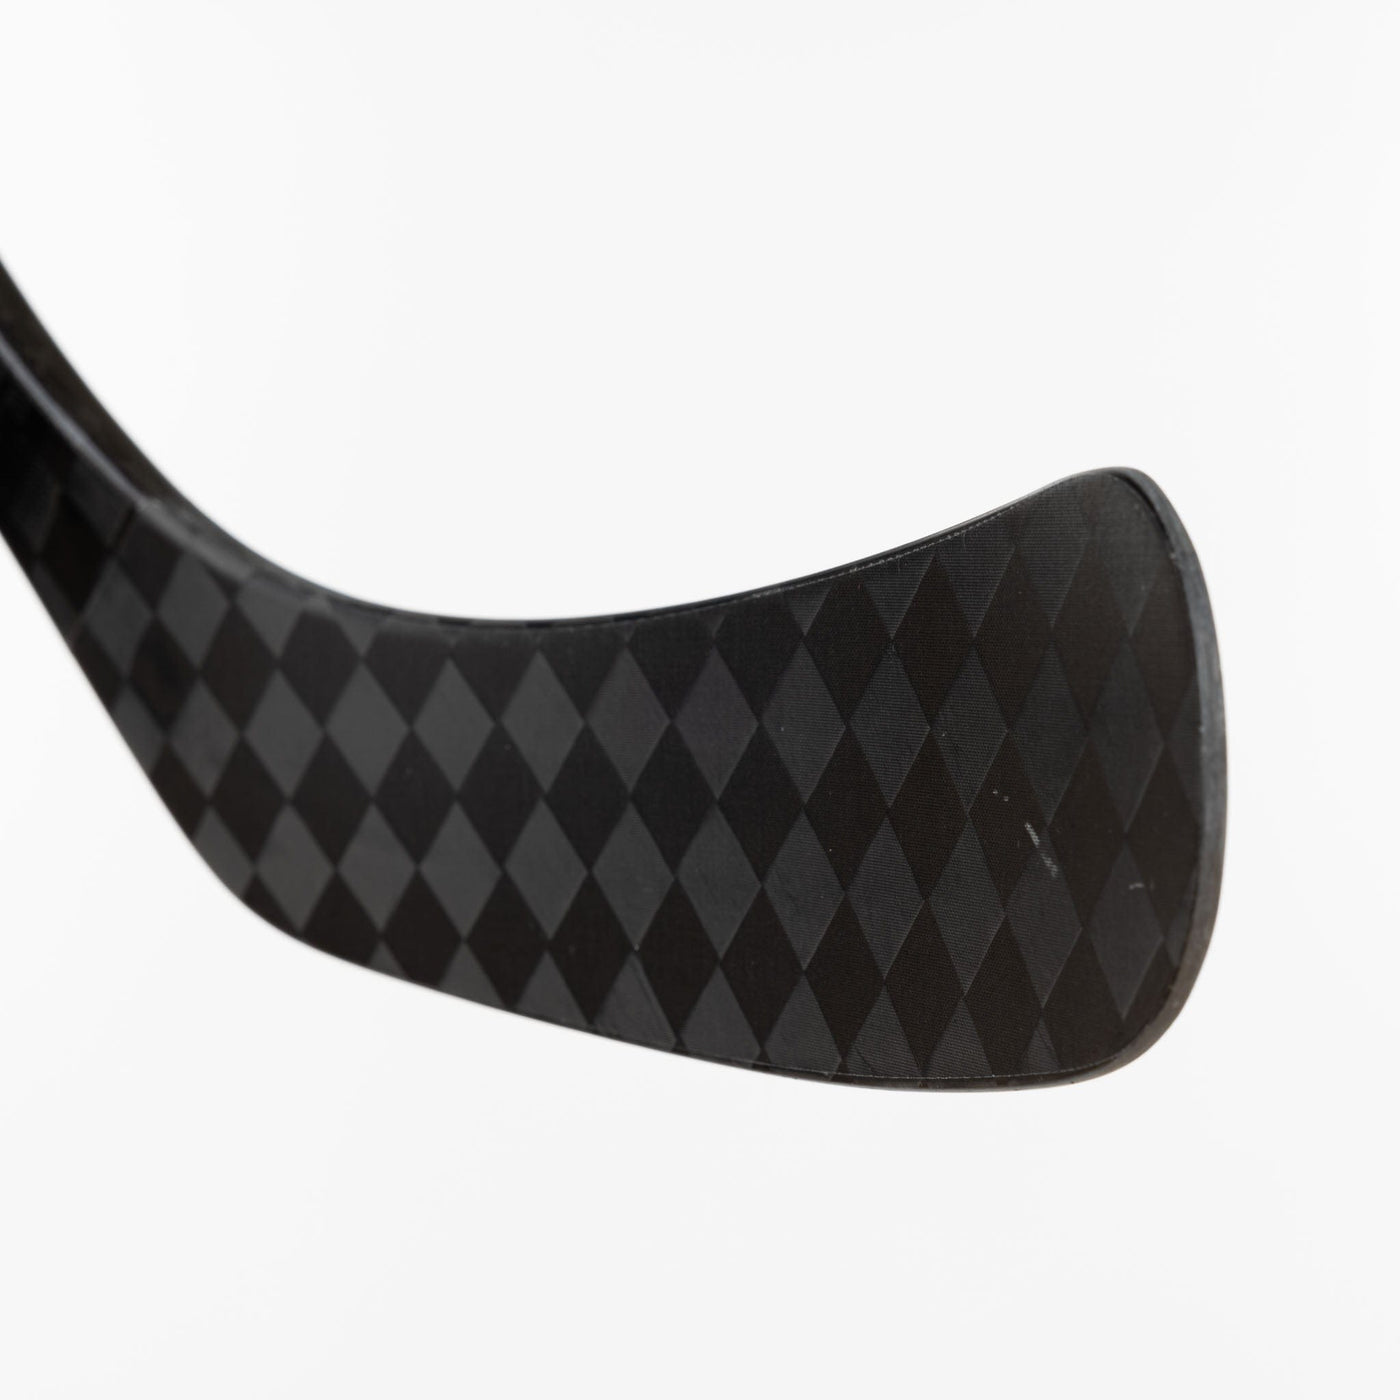 Bauer Nexus Performance Junior Hockey Stick - 30 Flex 2022